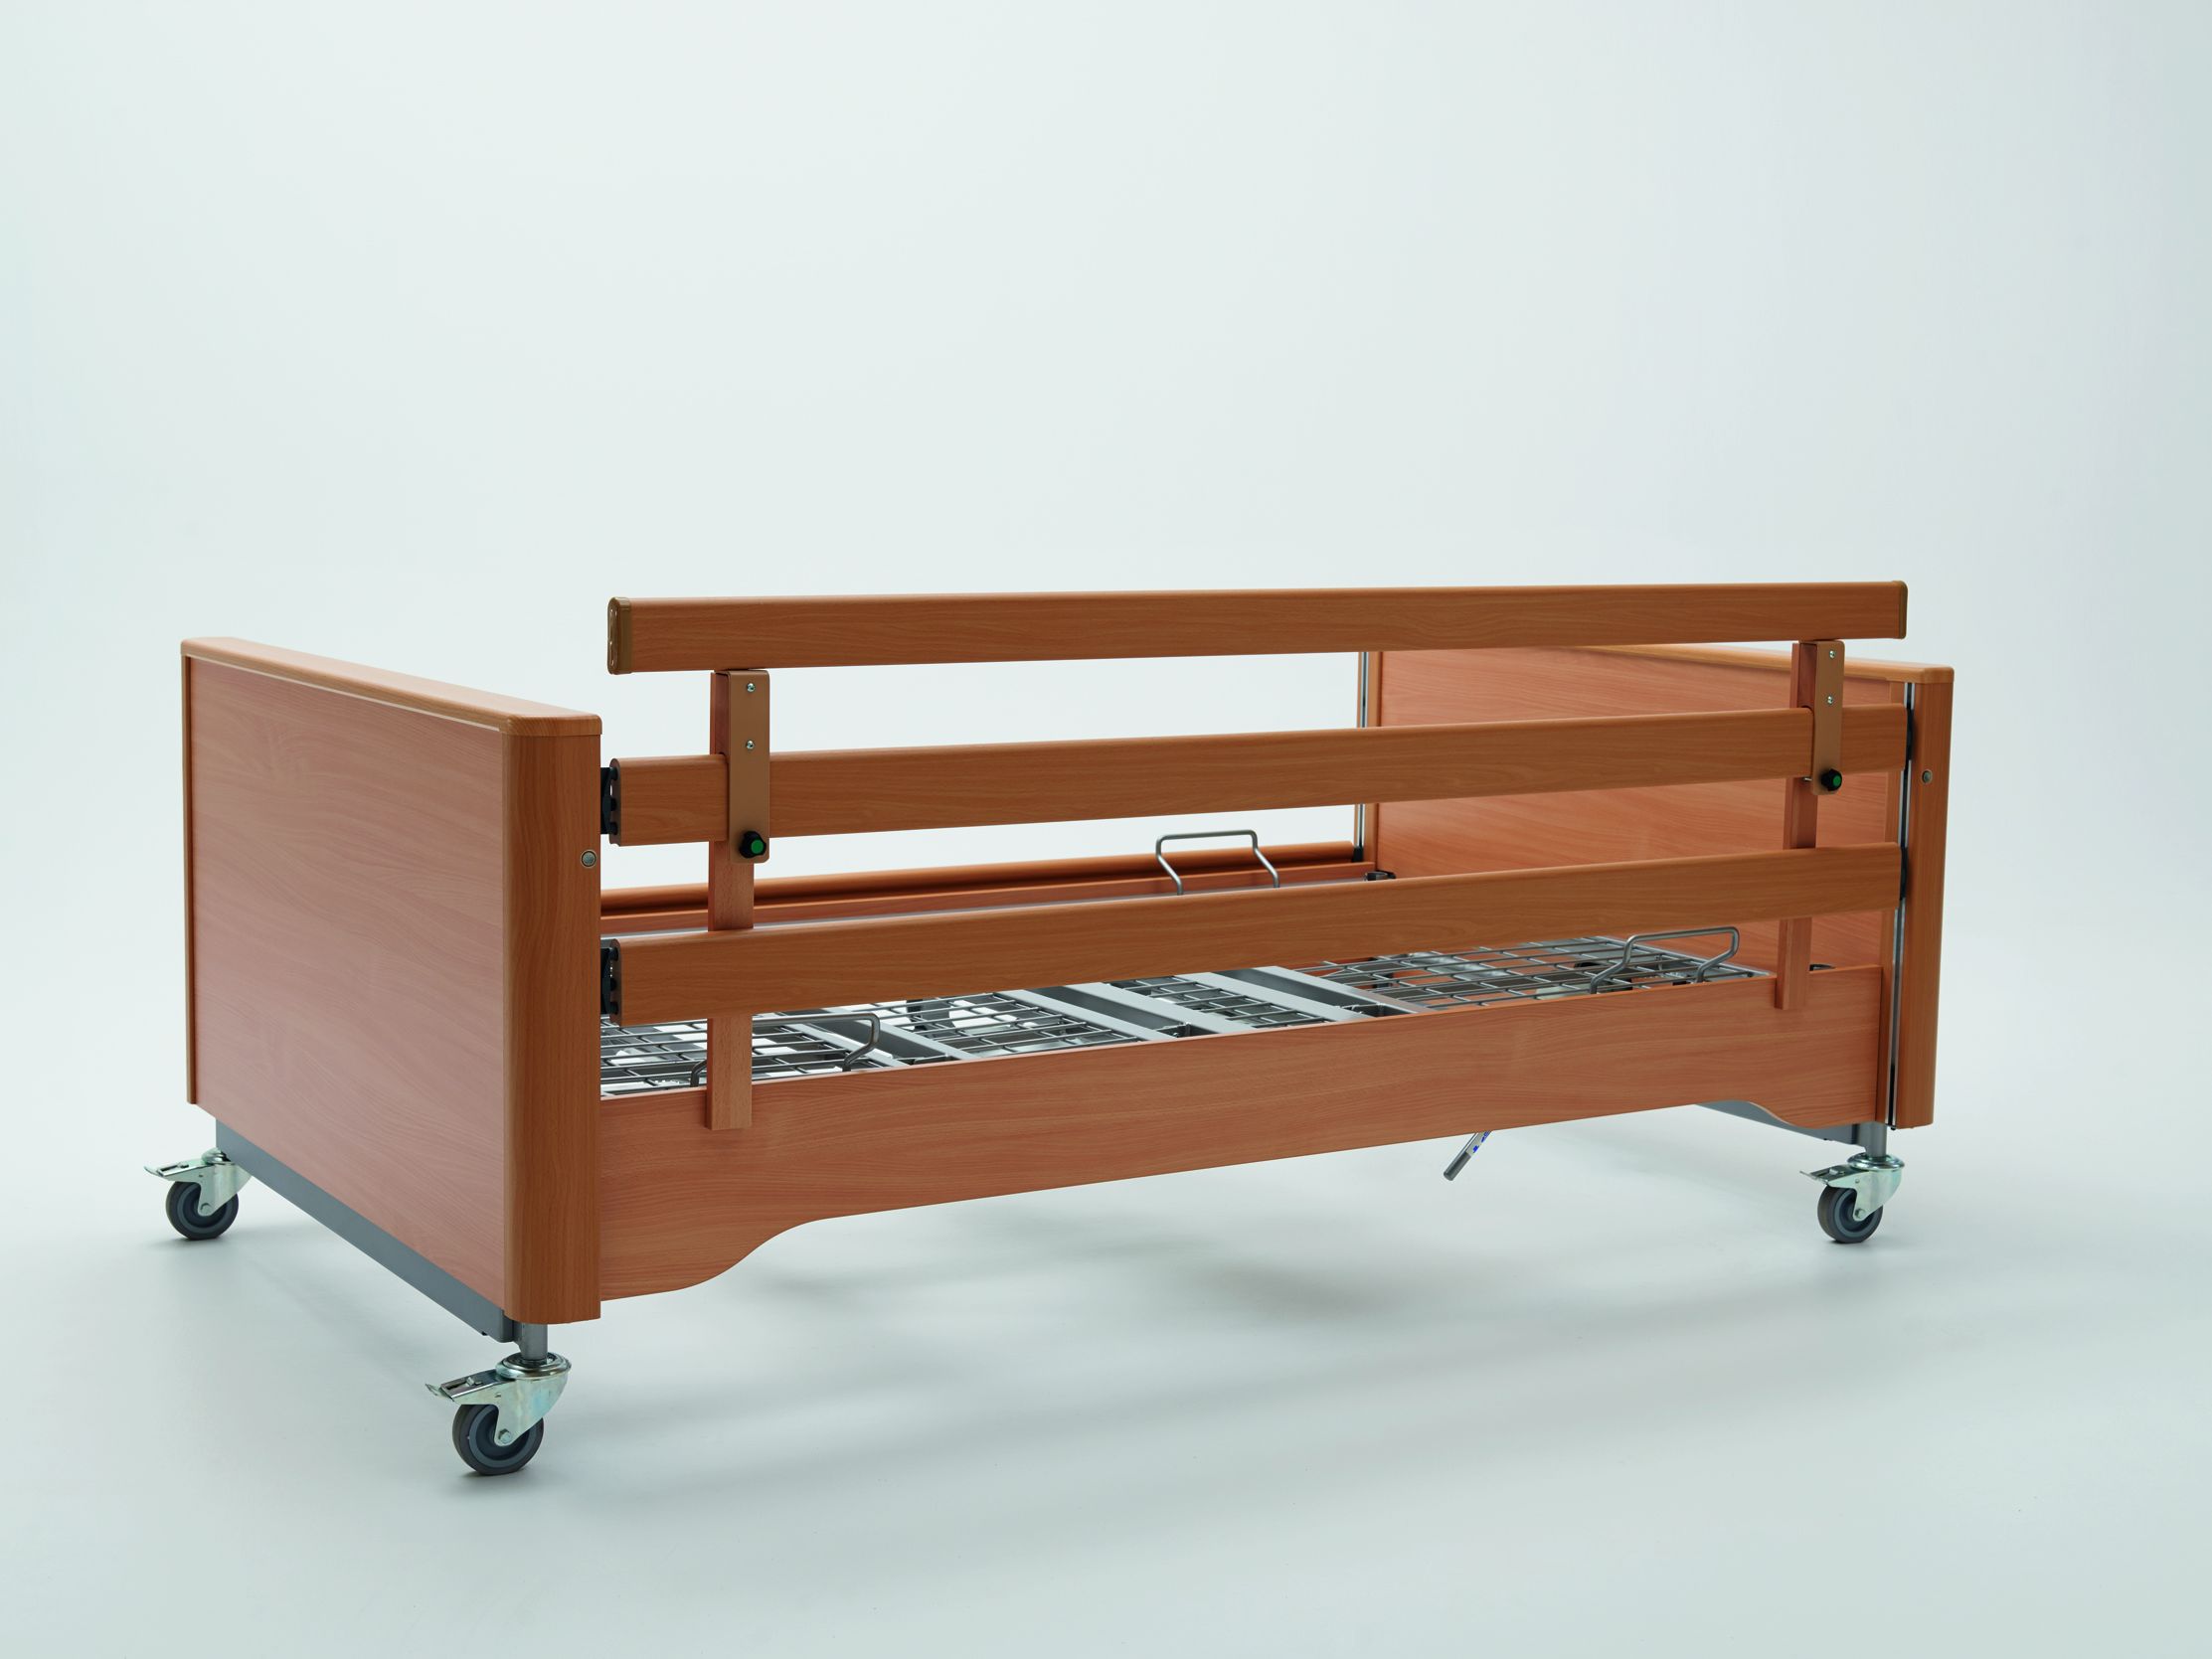 Barre de système de protection enfichable comme accessoire pour le lit pour patients obèses Gigant